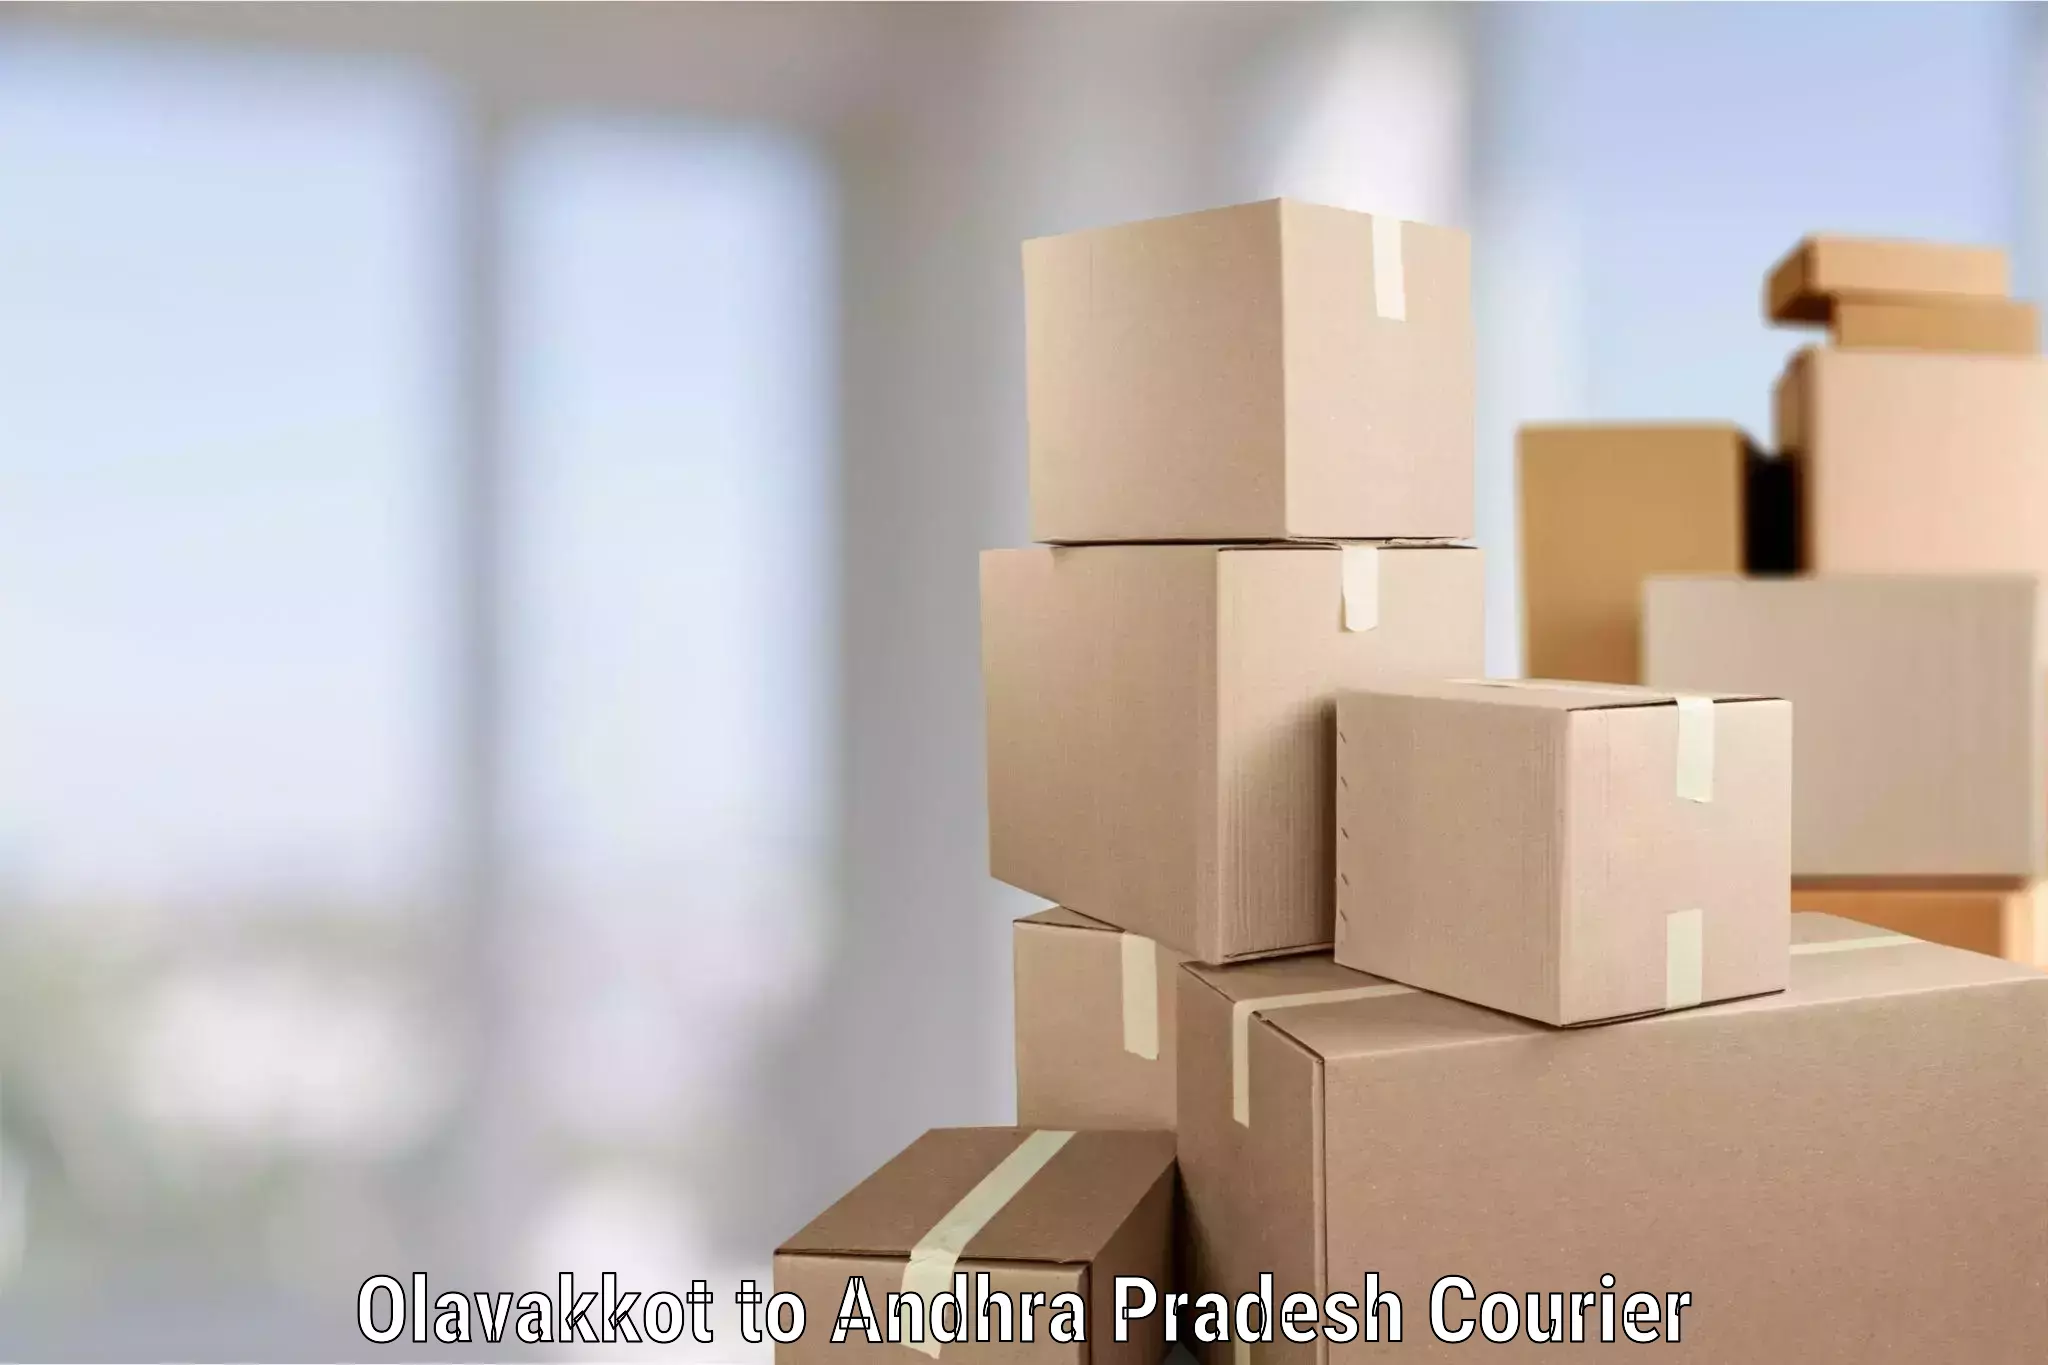 Furniture moving experts Olavakkot to Andhra Pradesh